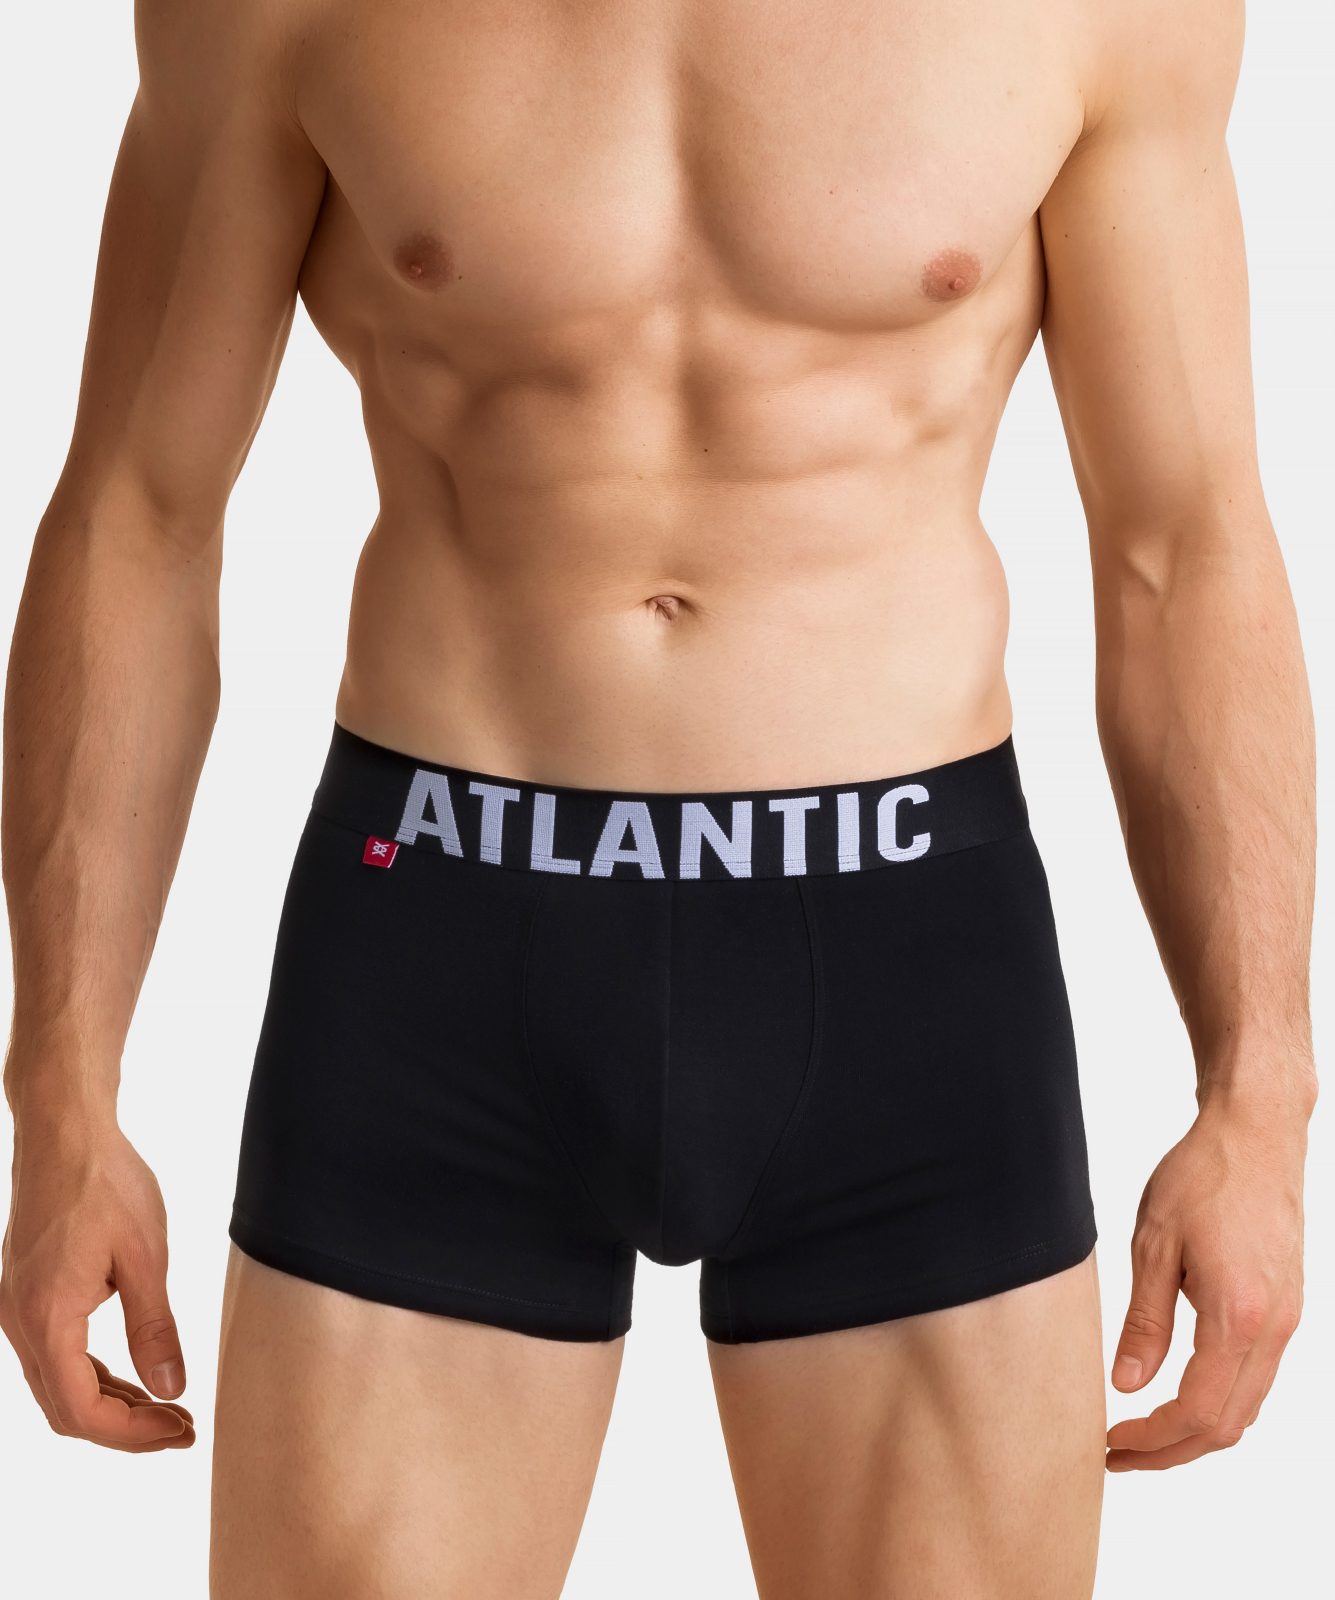 Atlantic мужские шорты 3SMH-003, Черный